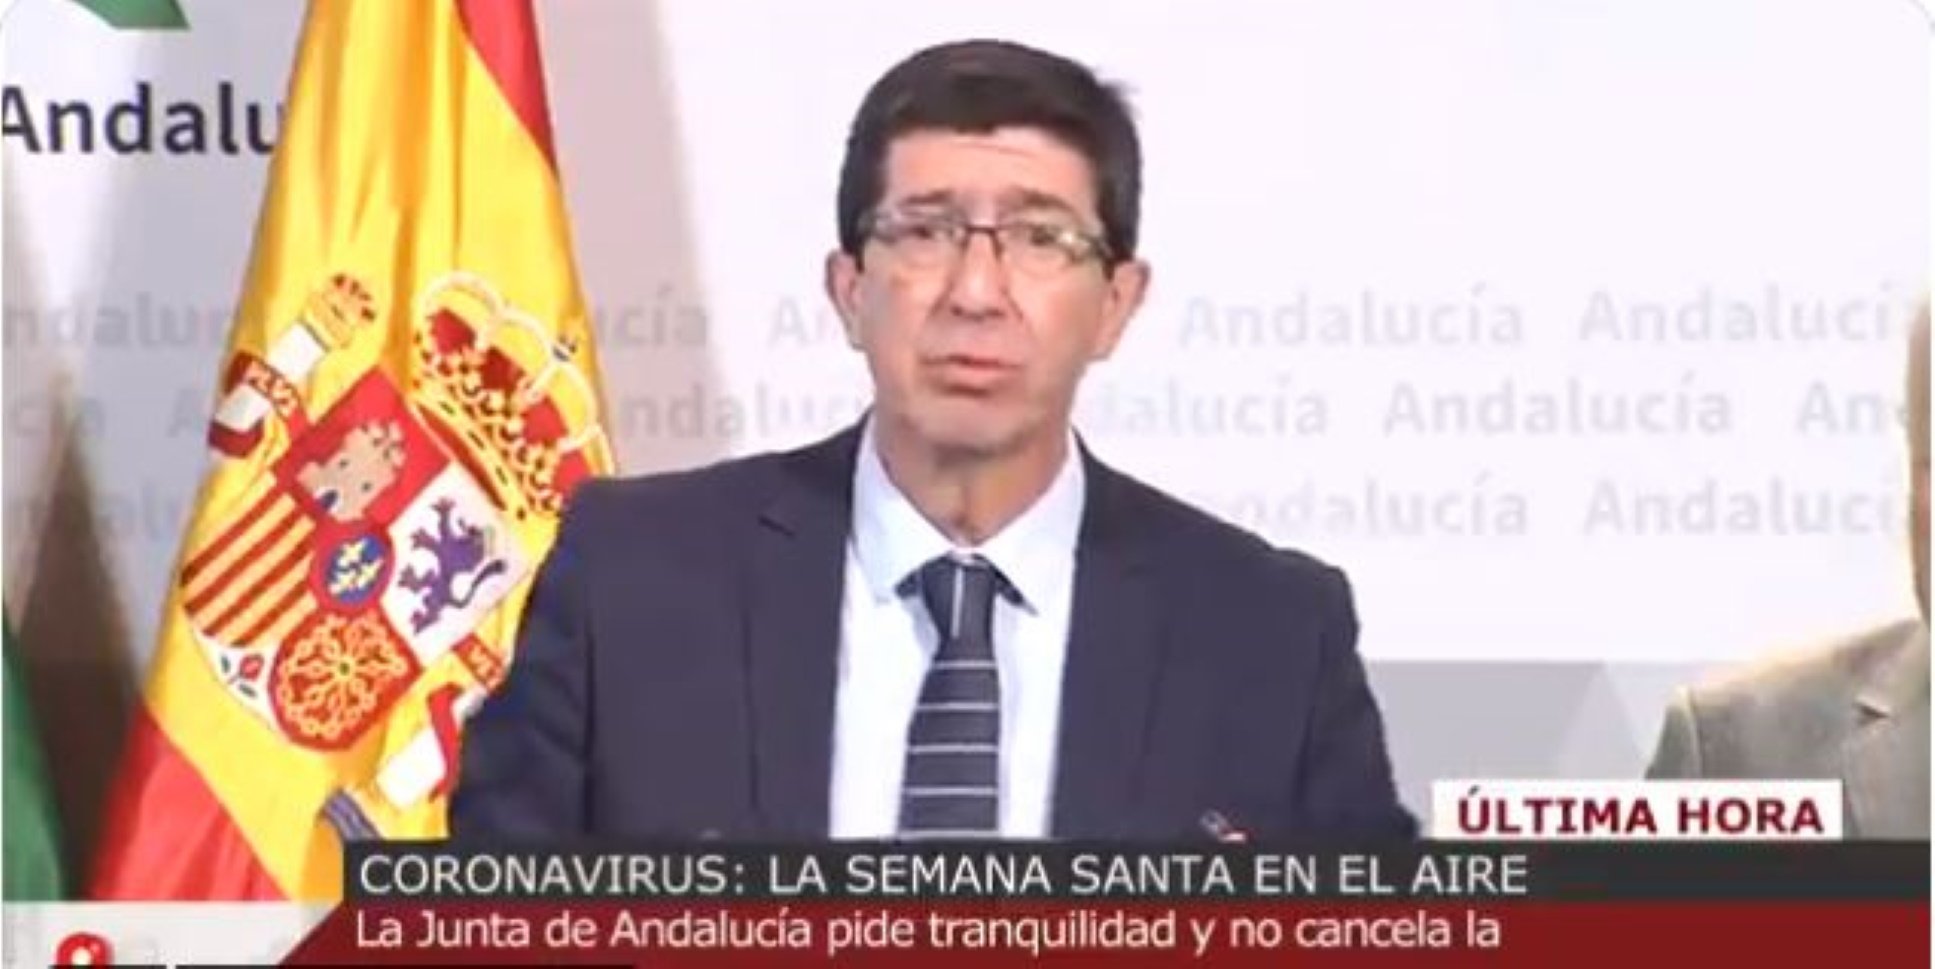 El vicepresident d'Andalusia: "La Setmana Santa no se suspendrà perquè té data"